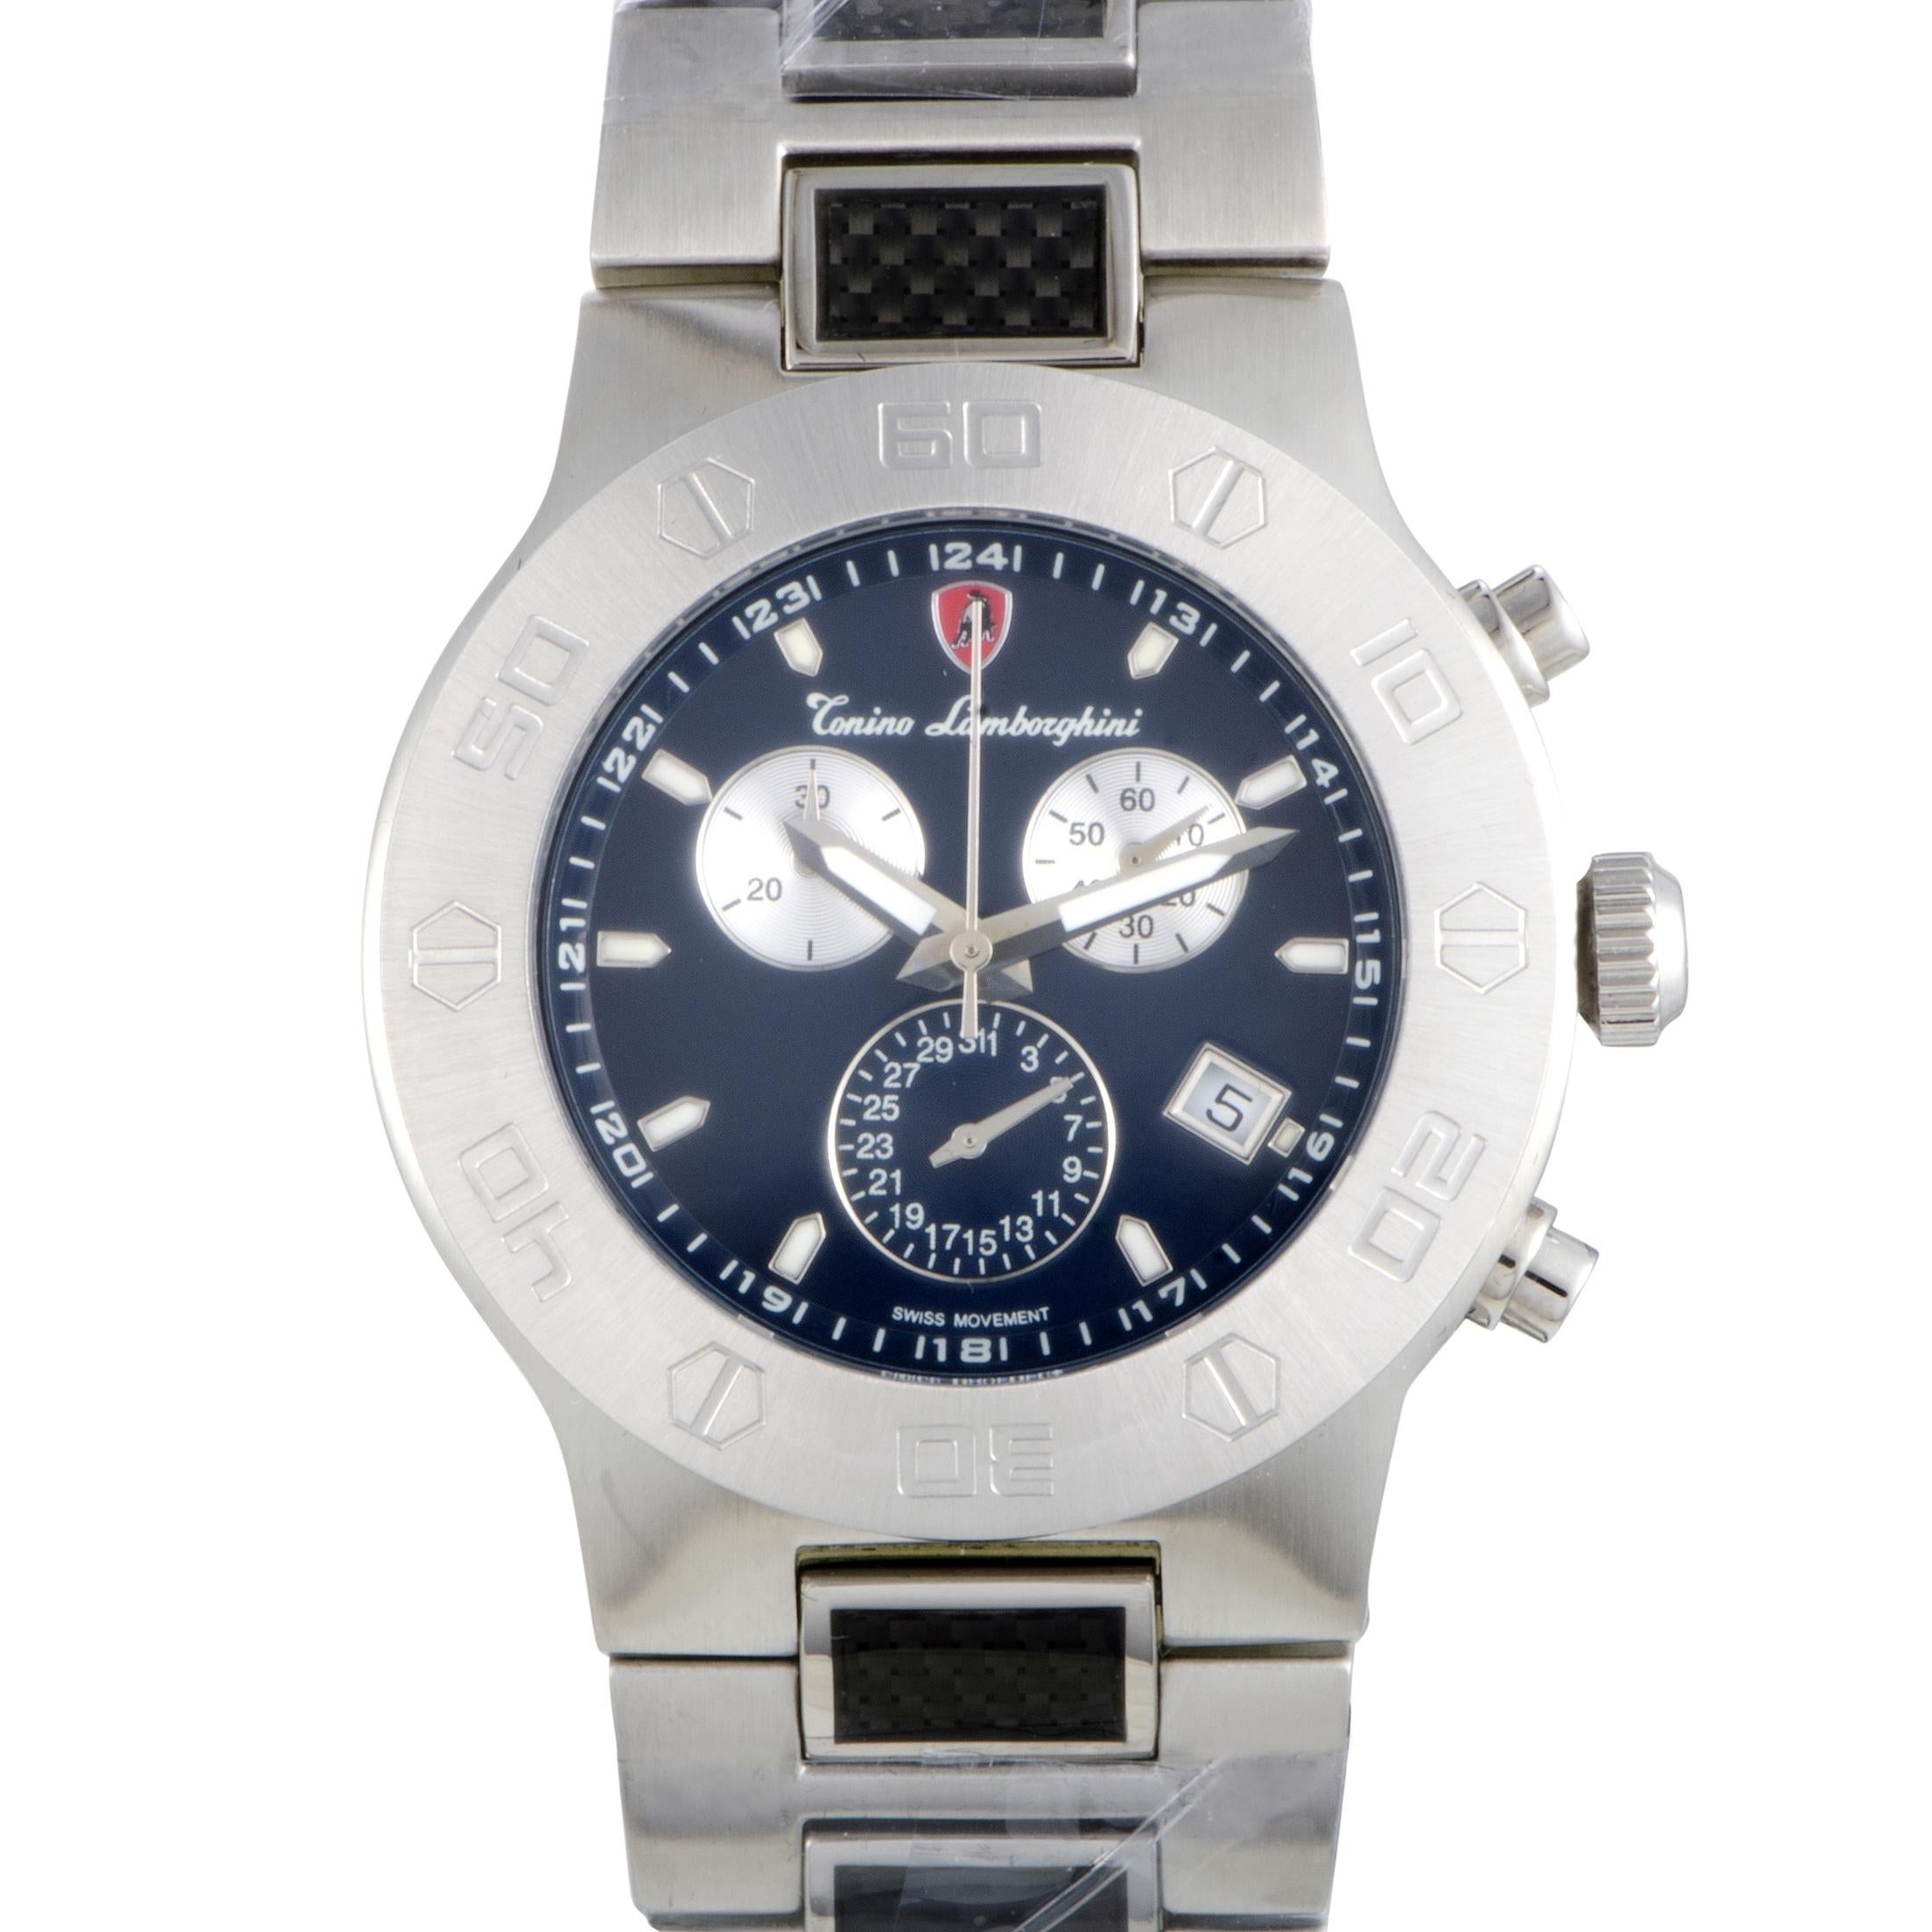 Tonino Lamborghini EN Models Men's Quartz Chronograph Watch EN034.105CF 1